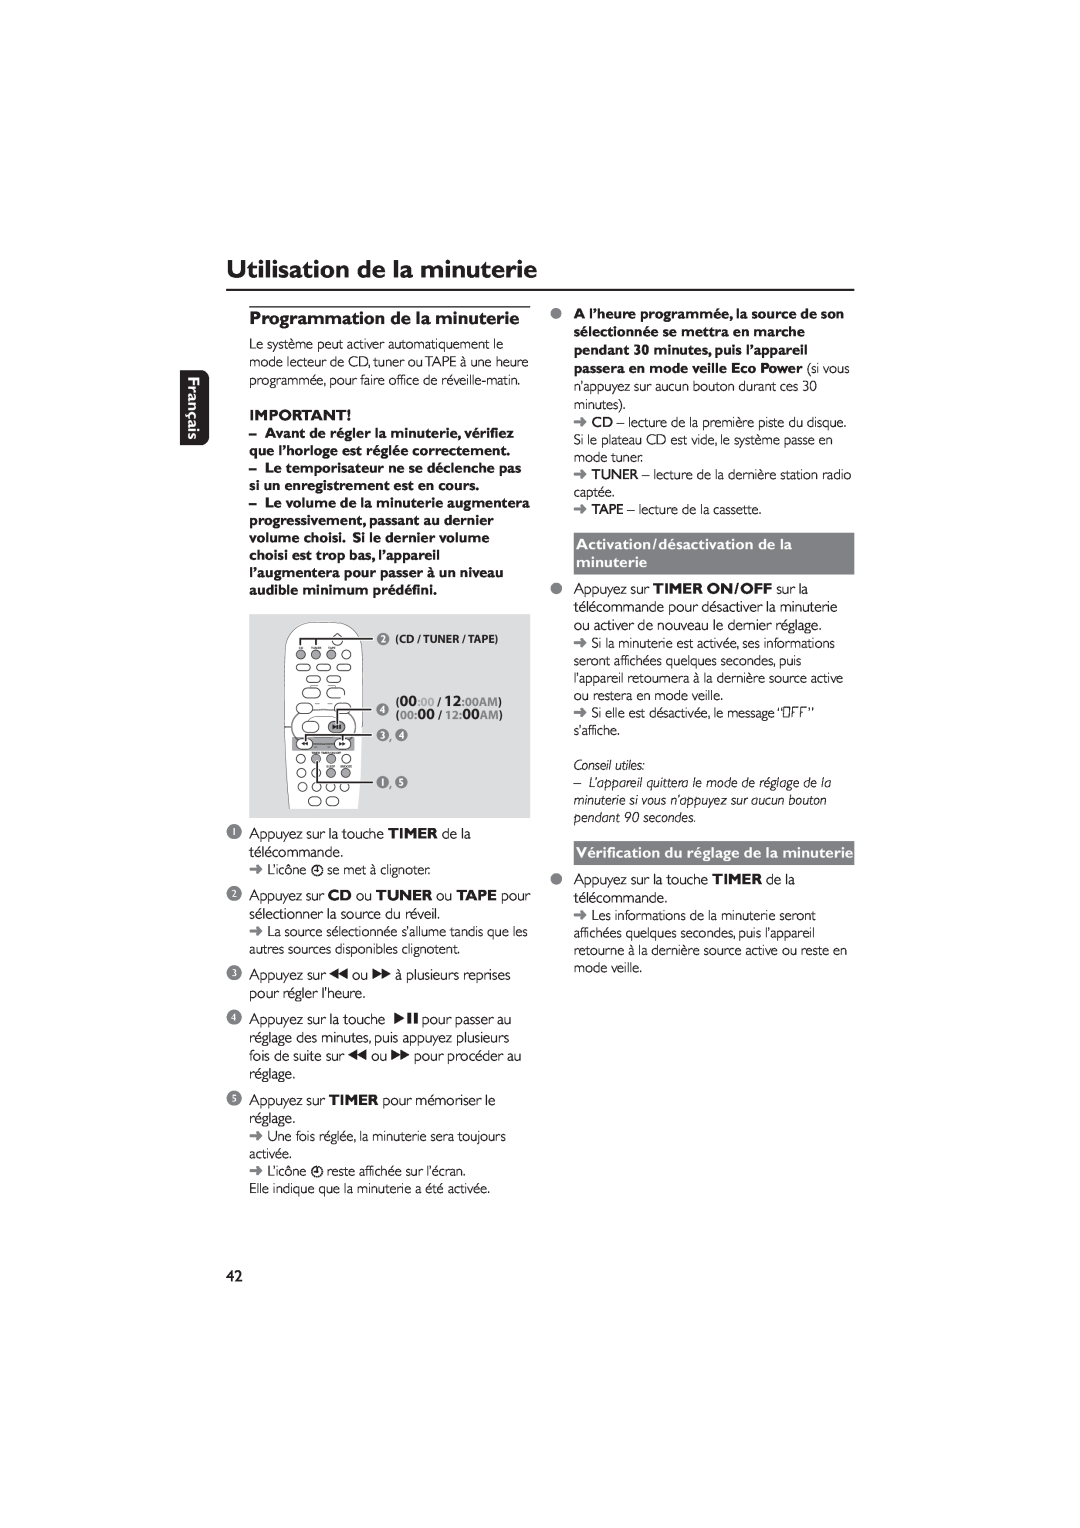 Philips MCM7, MCM8 manual Utilisation de la minuterie, Programmation de la minuterie, Français, Conseil utiles 